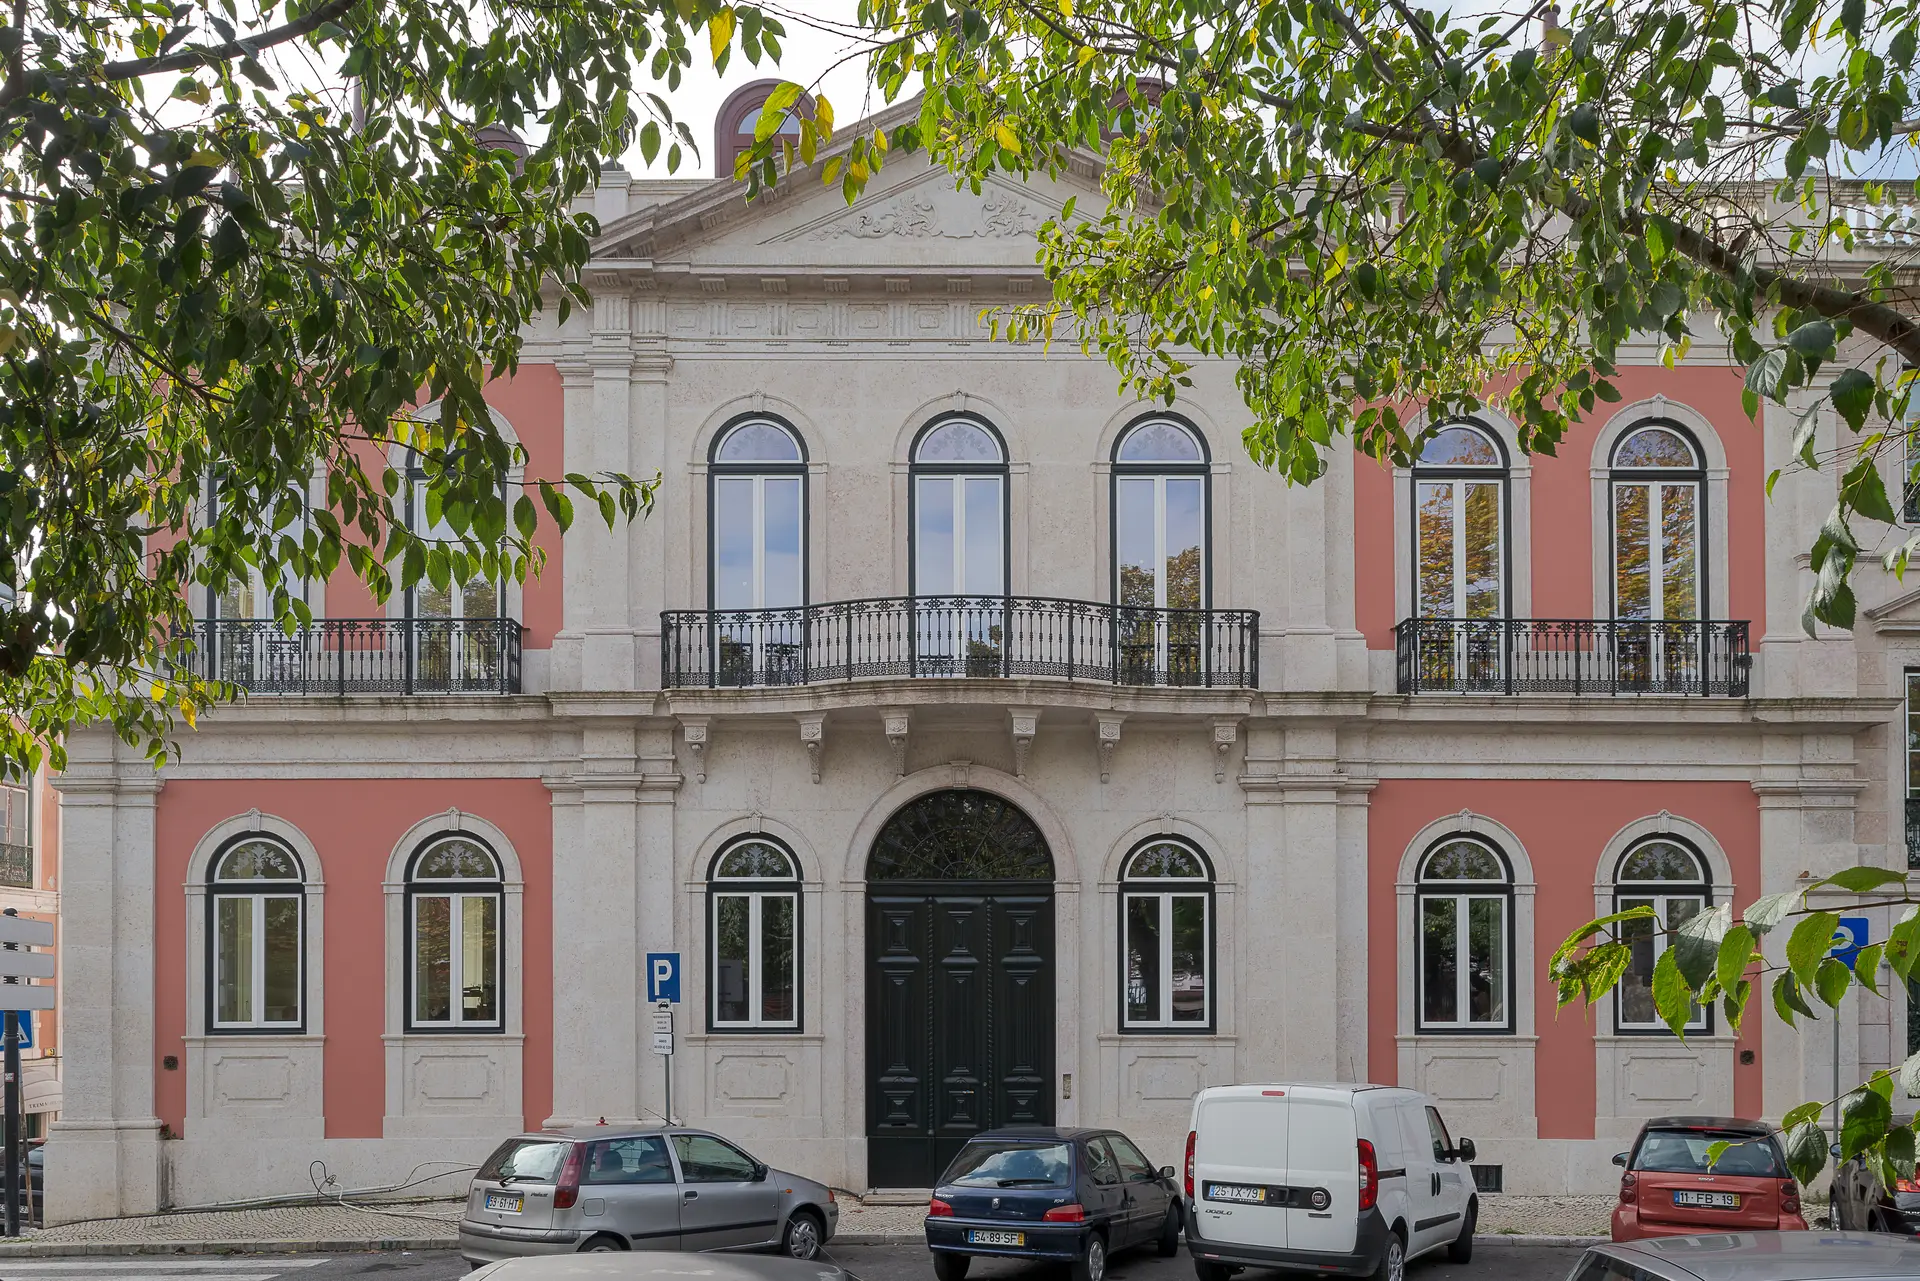 O prémio Prestígio, foi atribuído ao Palacete Barão de Santos. Situado junto ao jardim do Príncipe Real, no centro histórico de Lisboa, data do século XIX. Promovido pela Renowned Champion, a obra de reabilitação esteve a cargo do ateliê Barbas Lopes arquitetos.